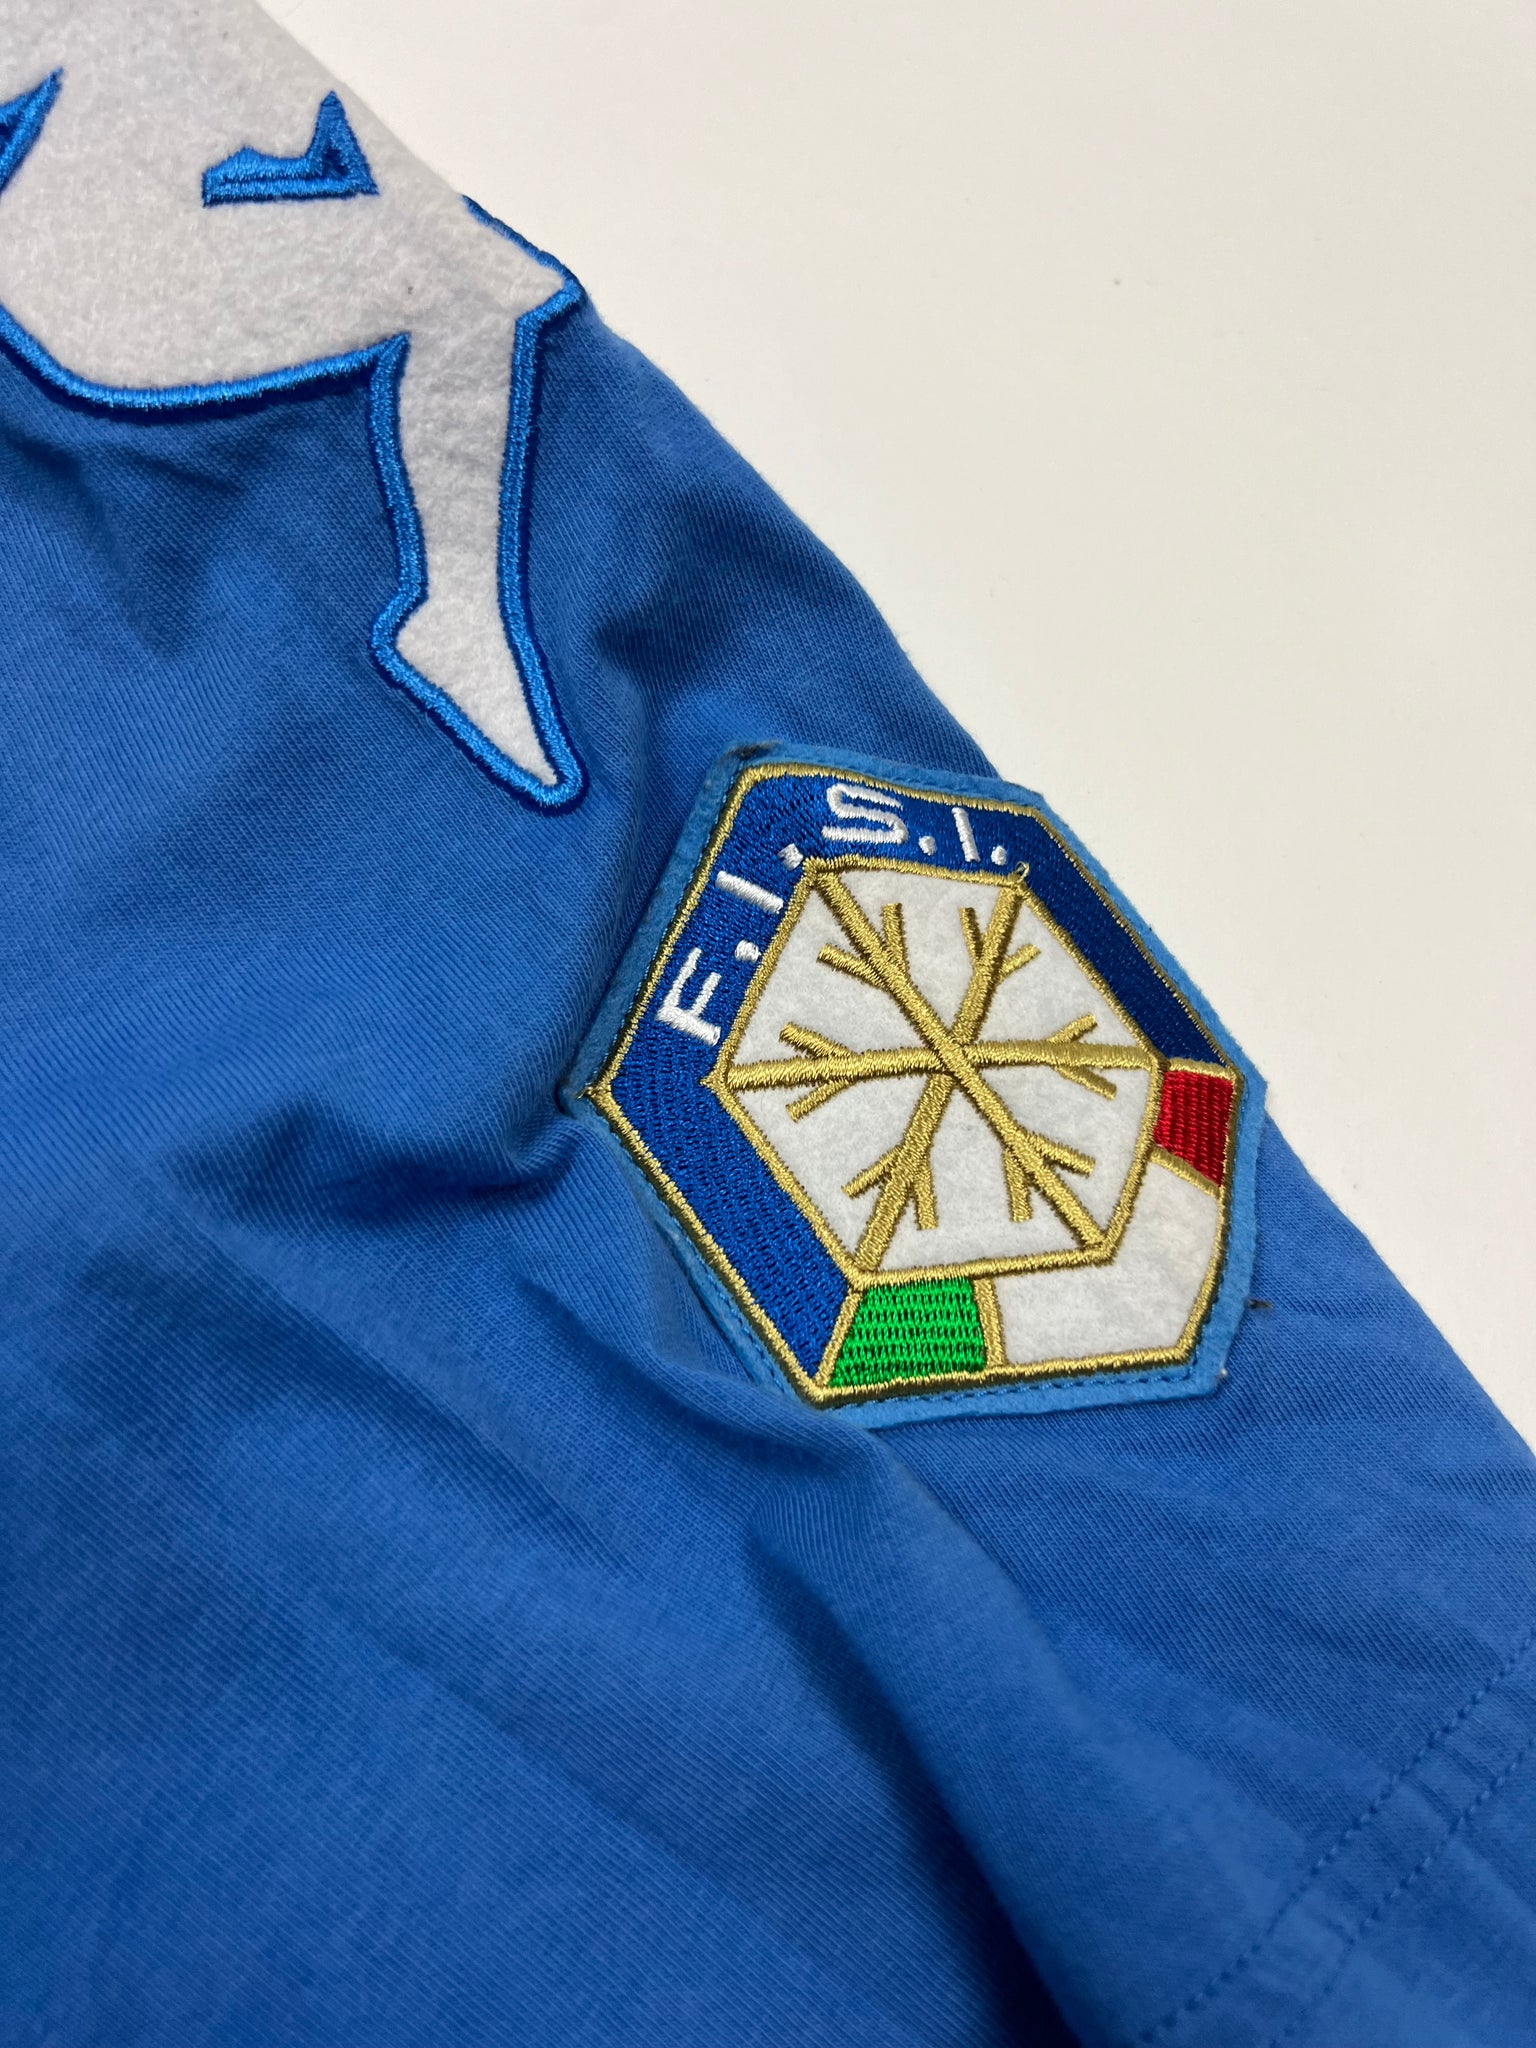 Kappa Italia T-Shirt (L)